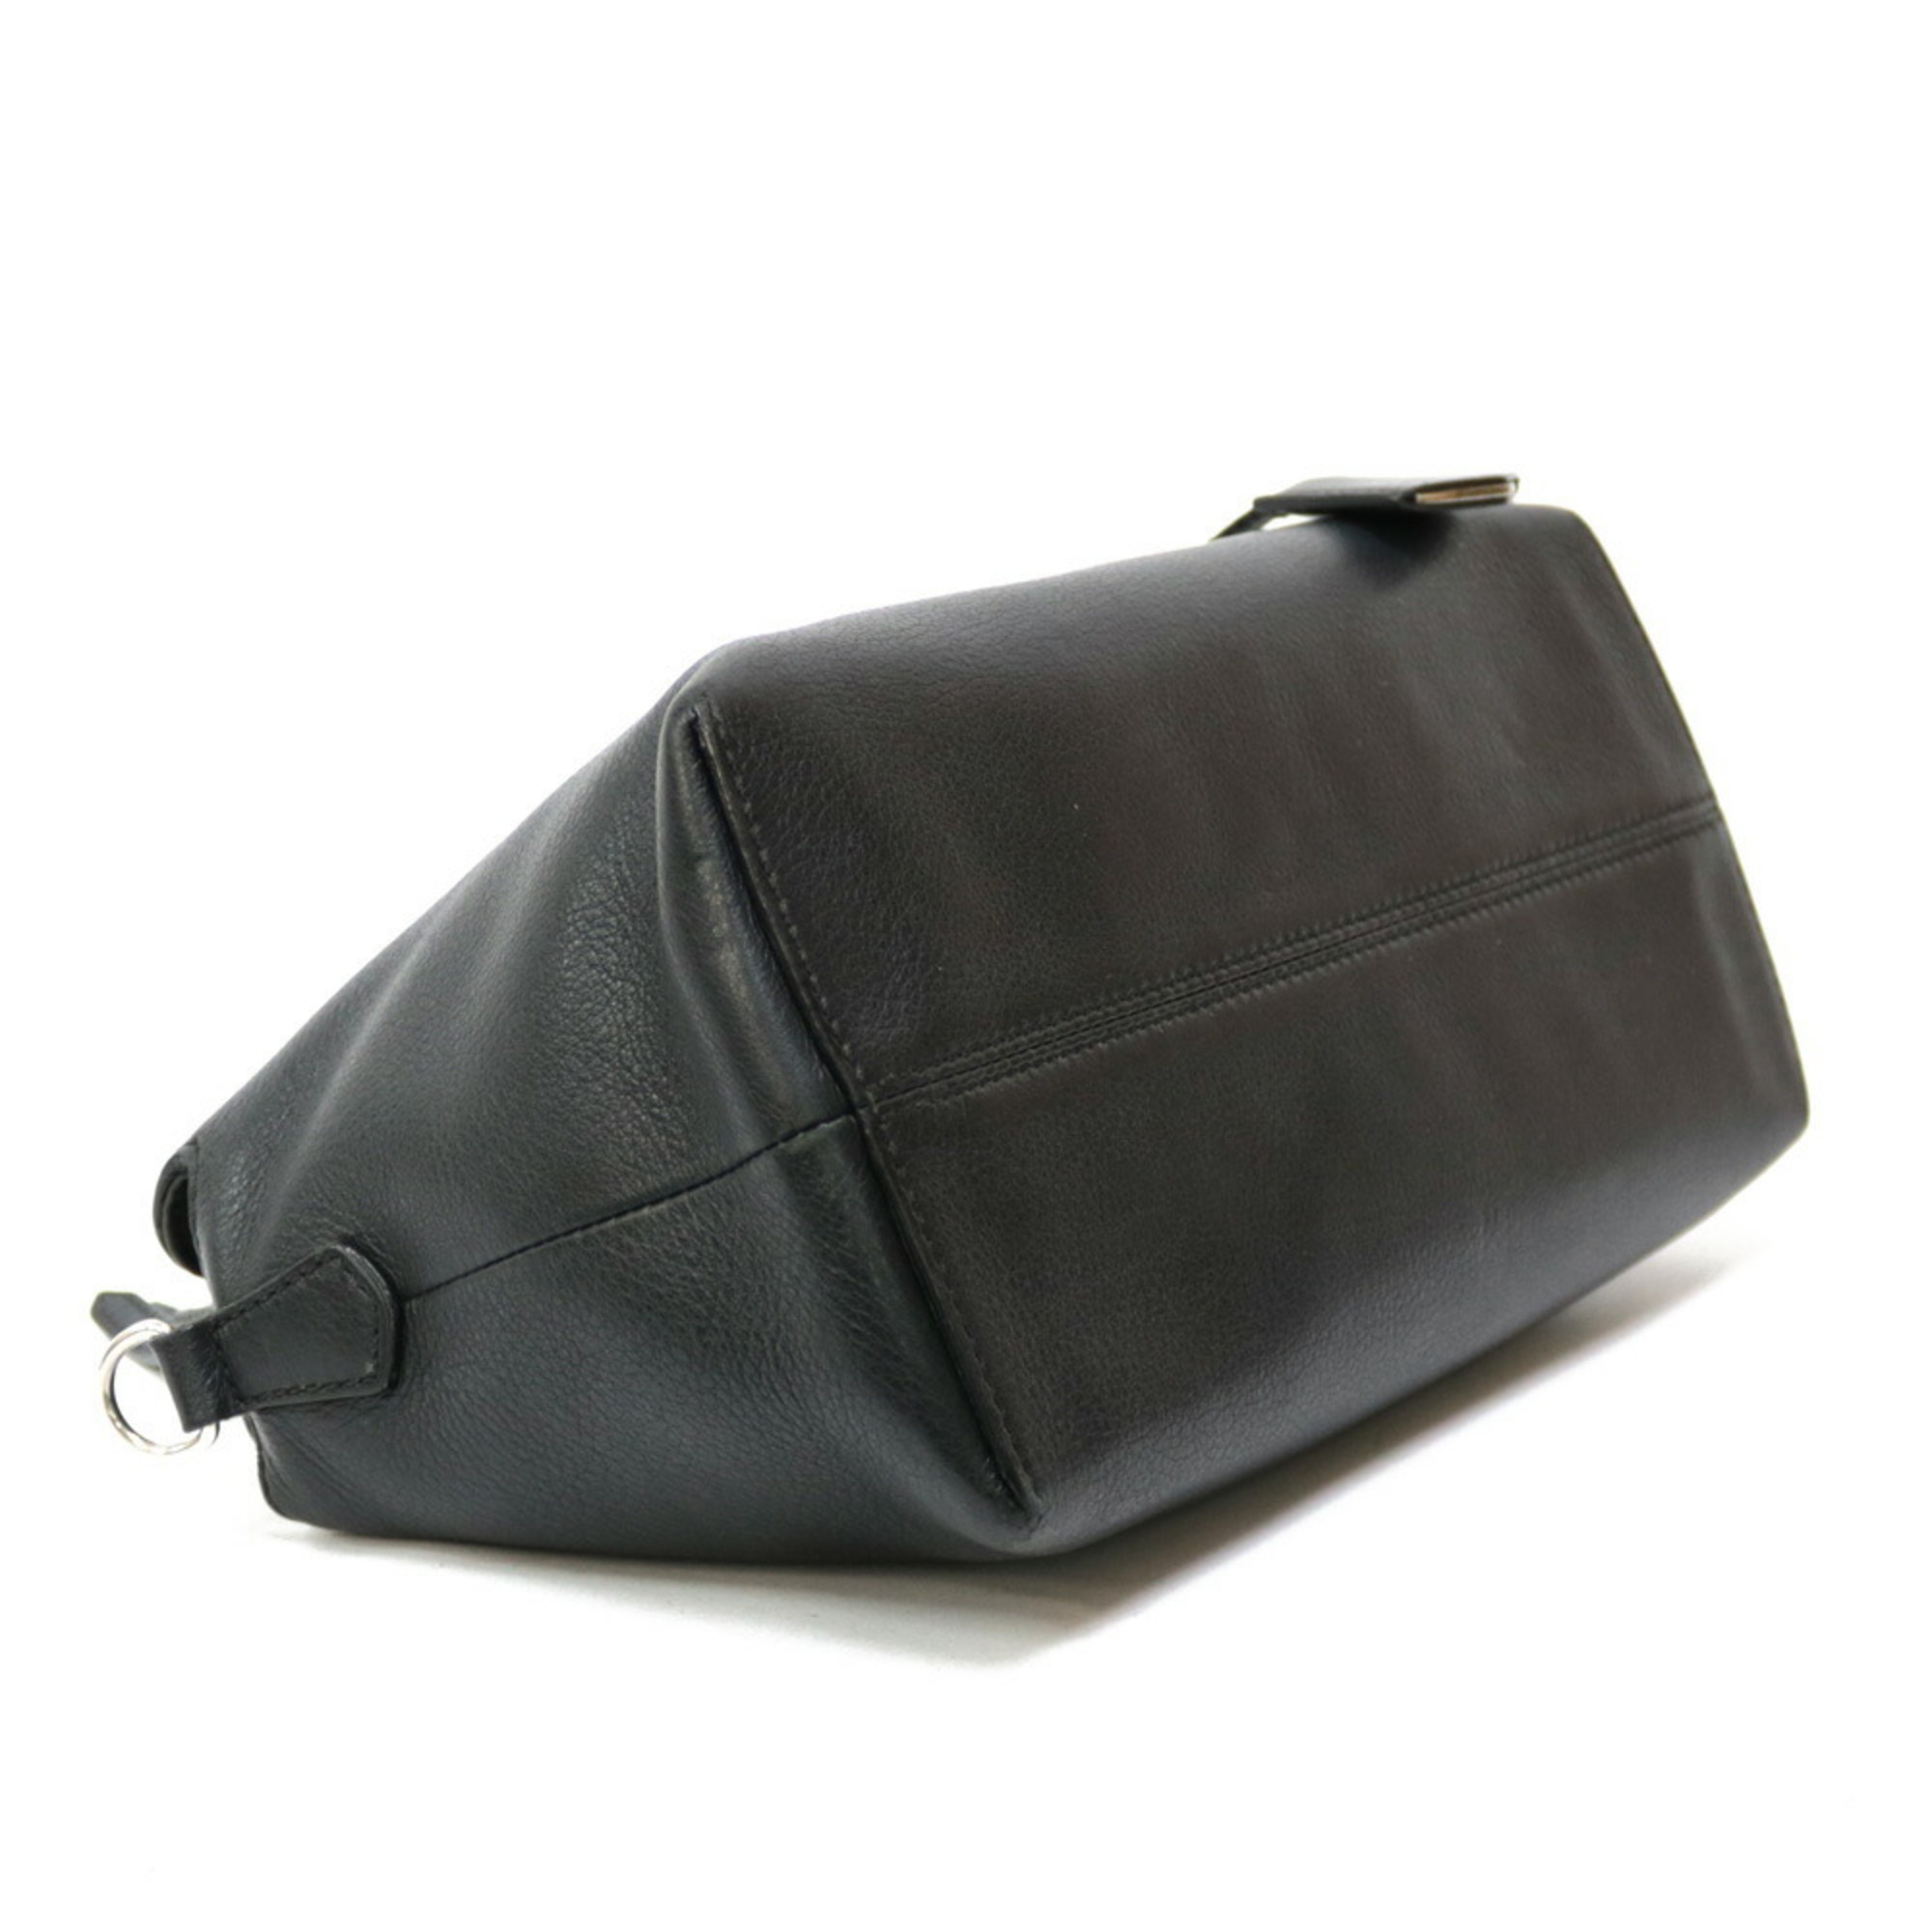 Fendi Visaway Shoulder Bag Leather Black Ladies FENDI Handbag BRB00000320006110